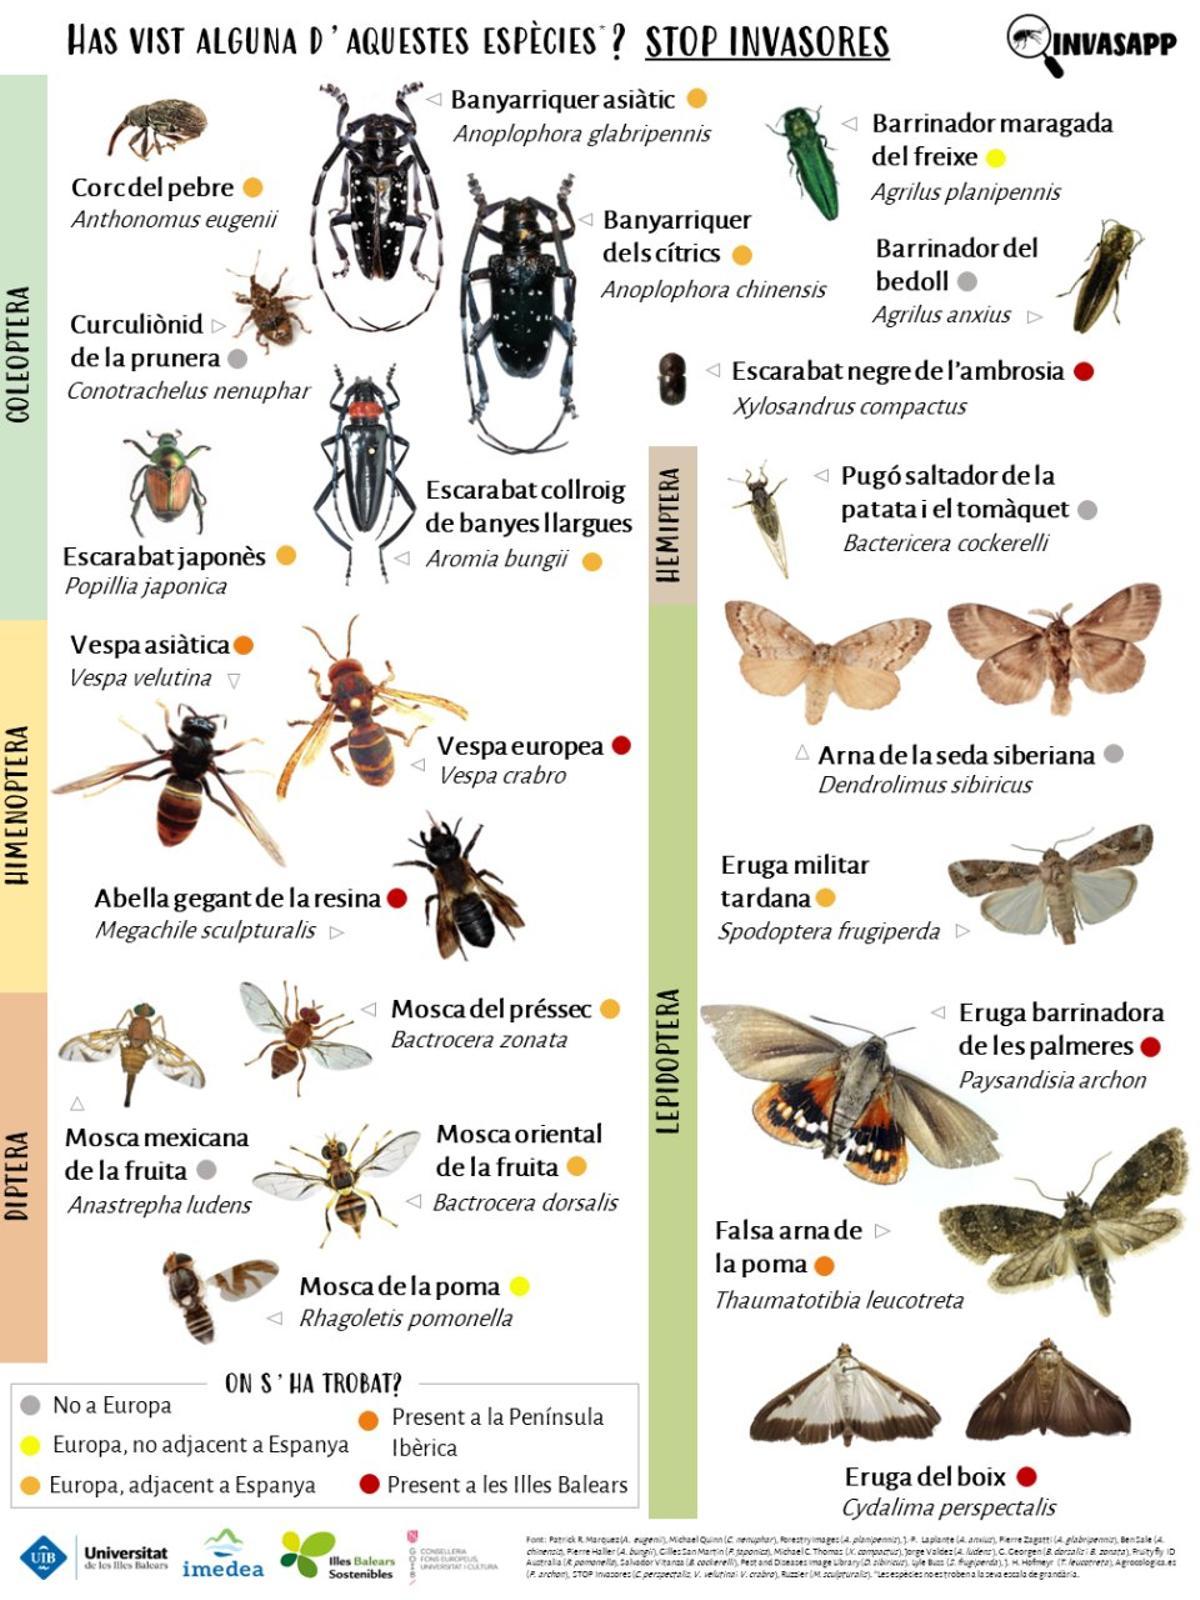 Insectos invasores que han sido observados en Mallorca o que podrían llegar.